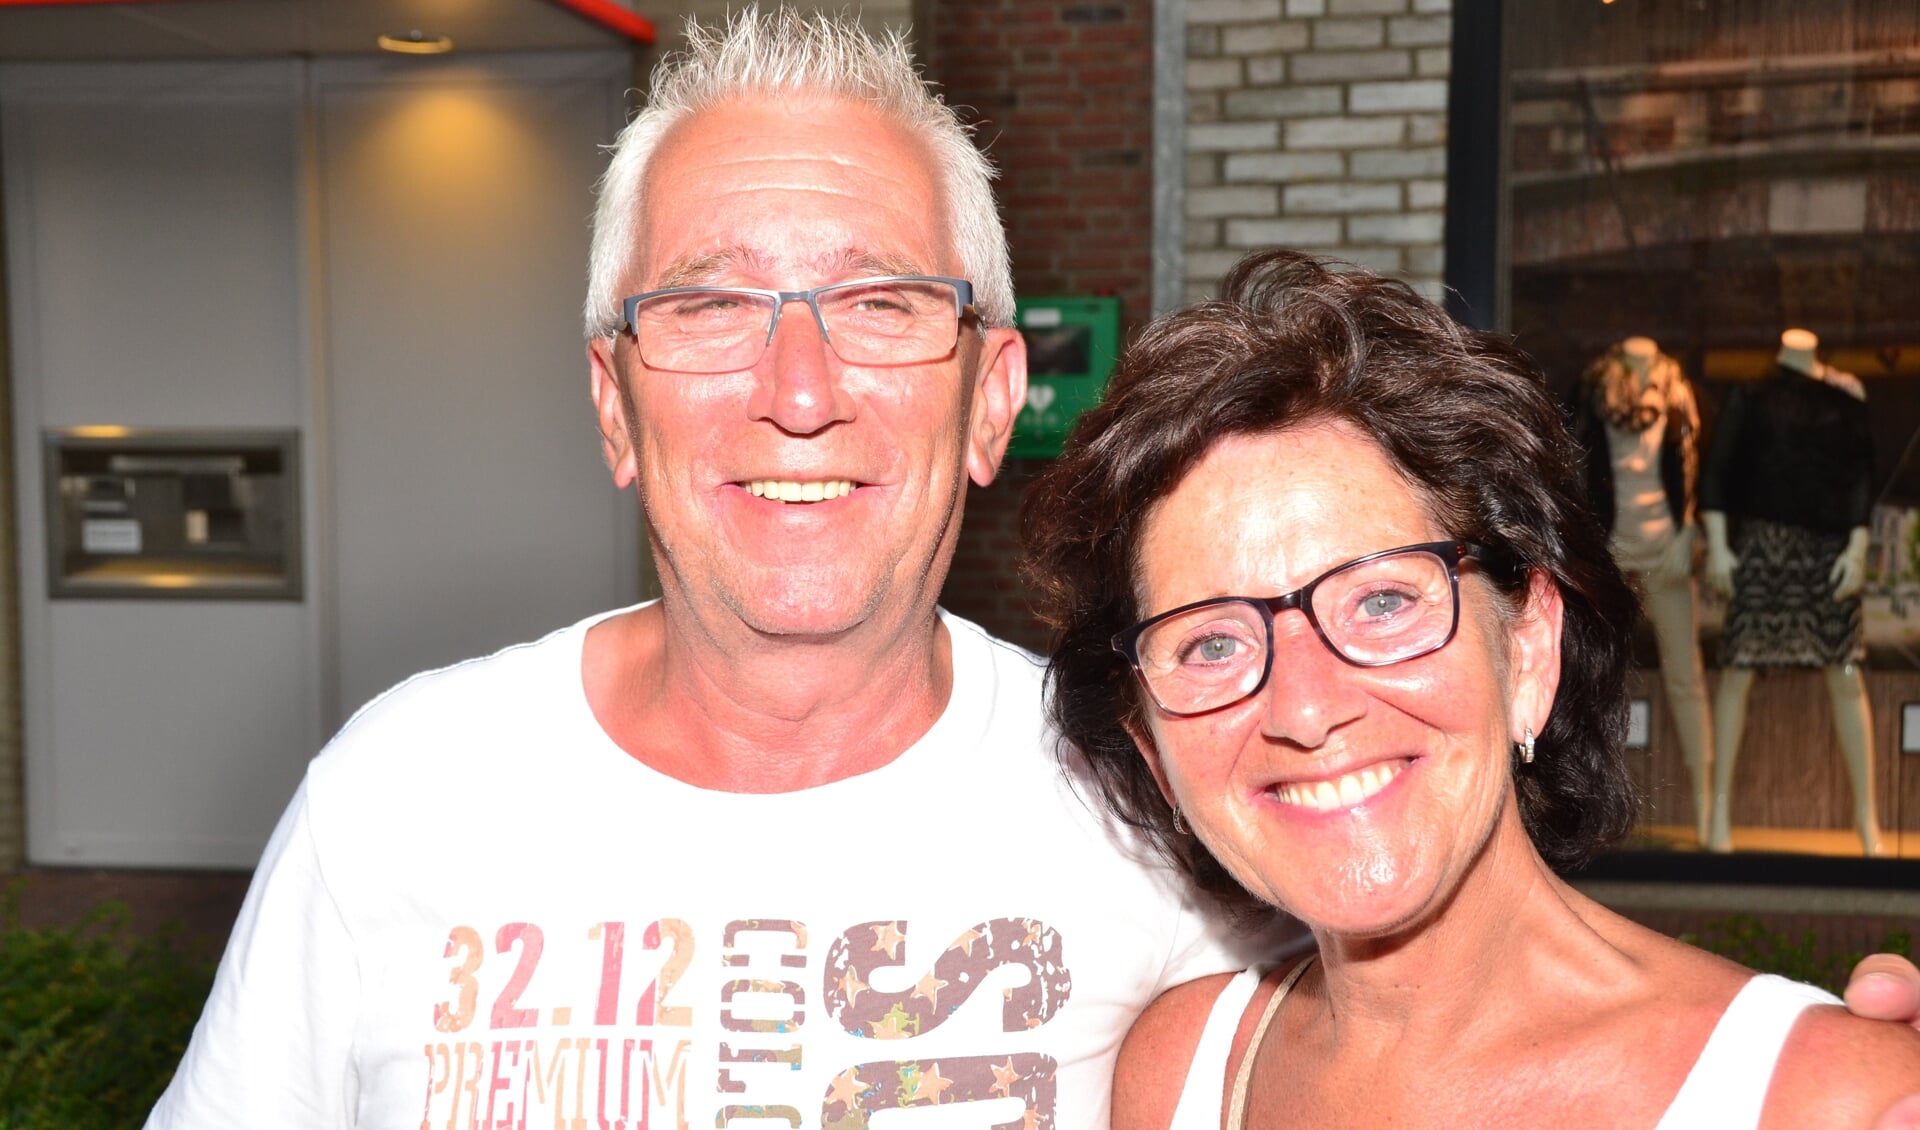 Sjef en Ria van den Eijnden: hopelijk kan  Rooi Veghel inspireren